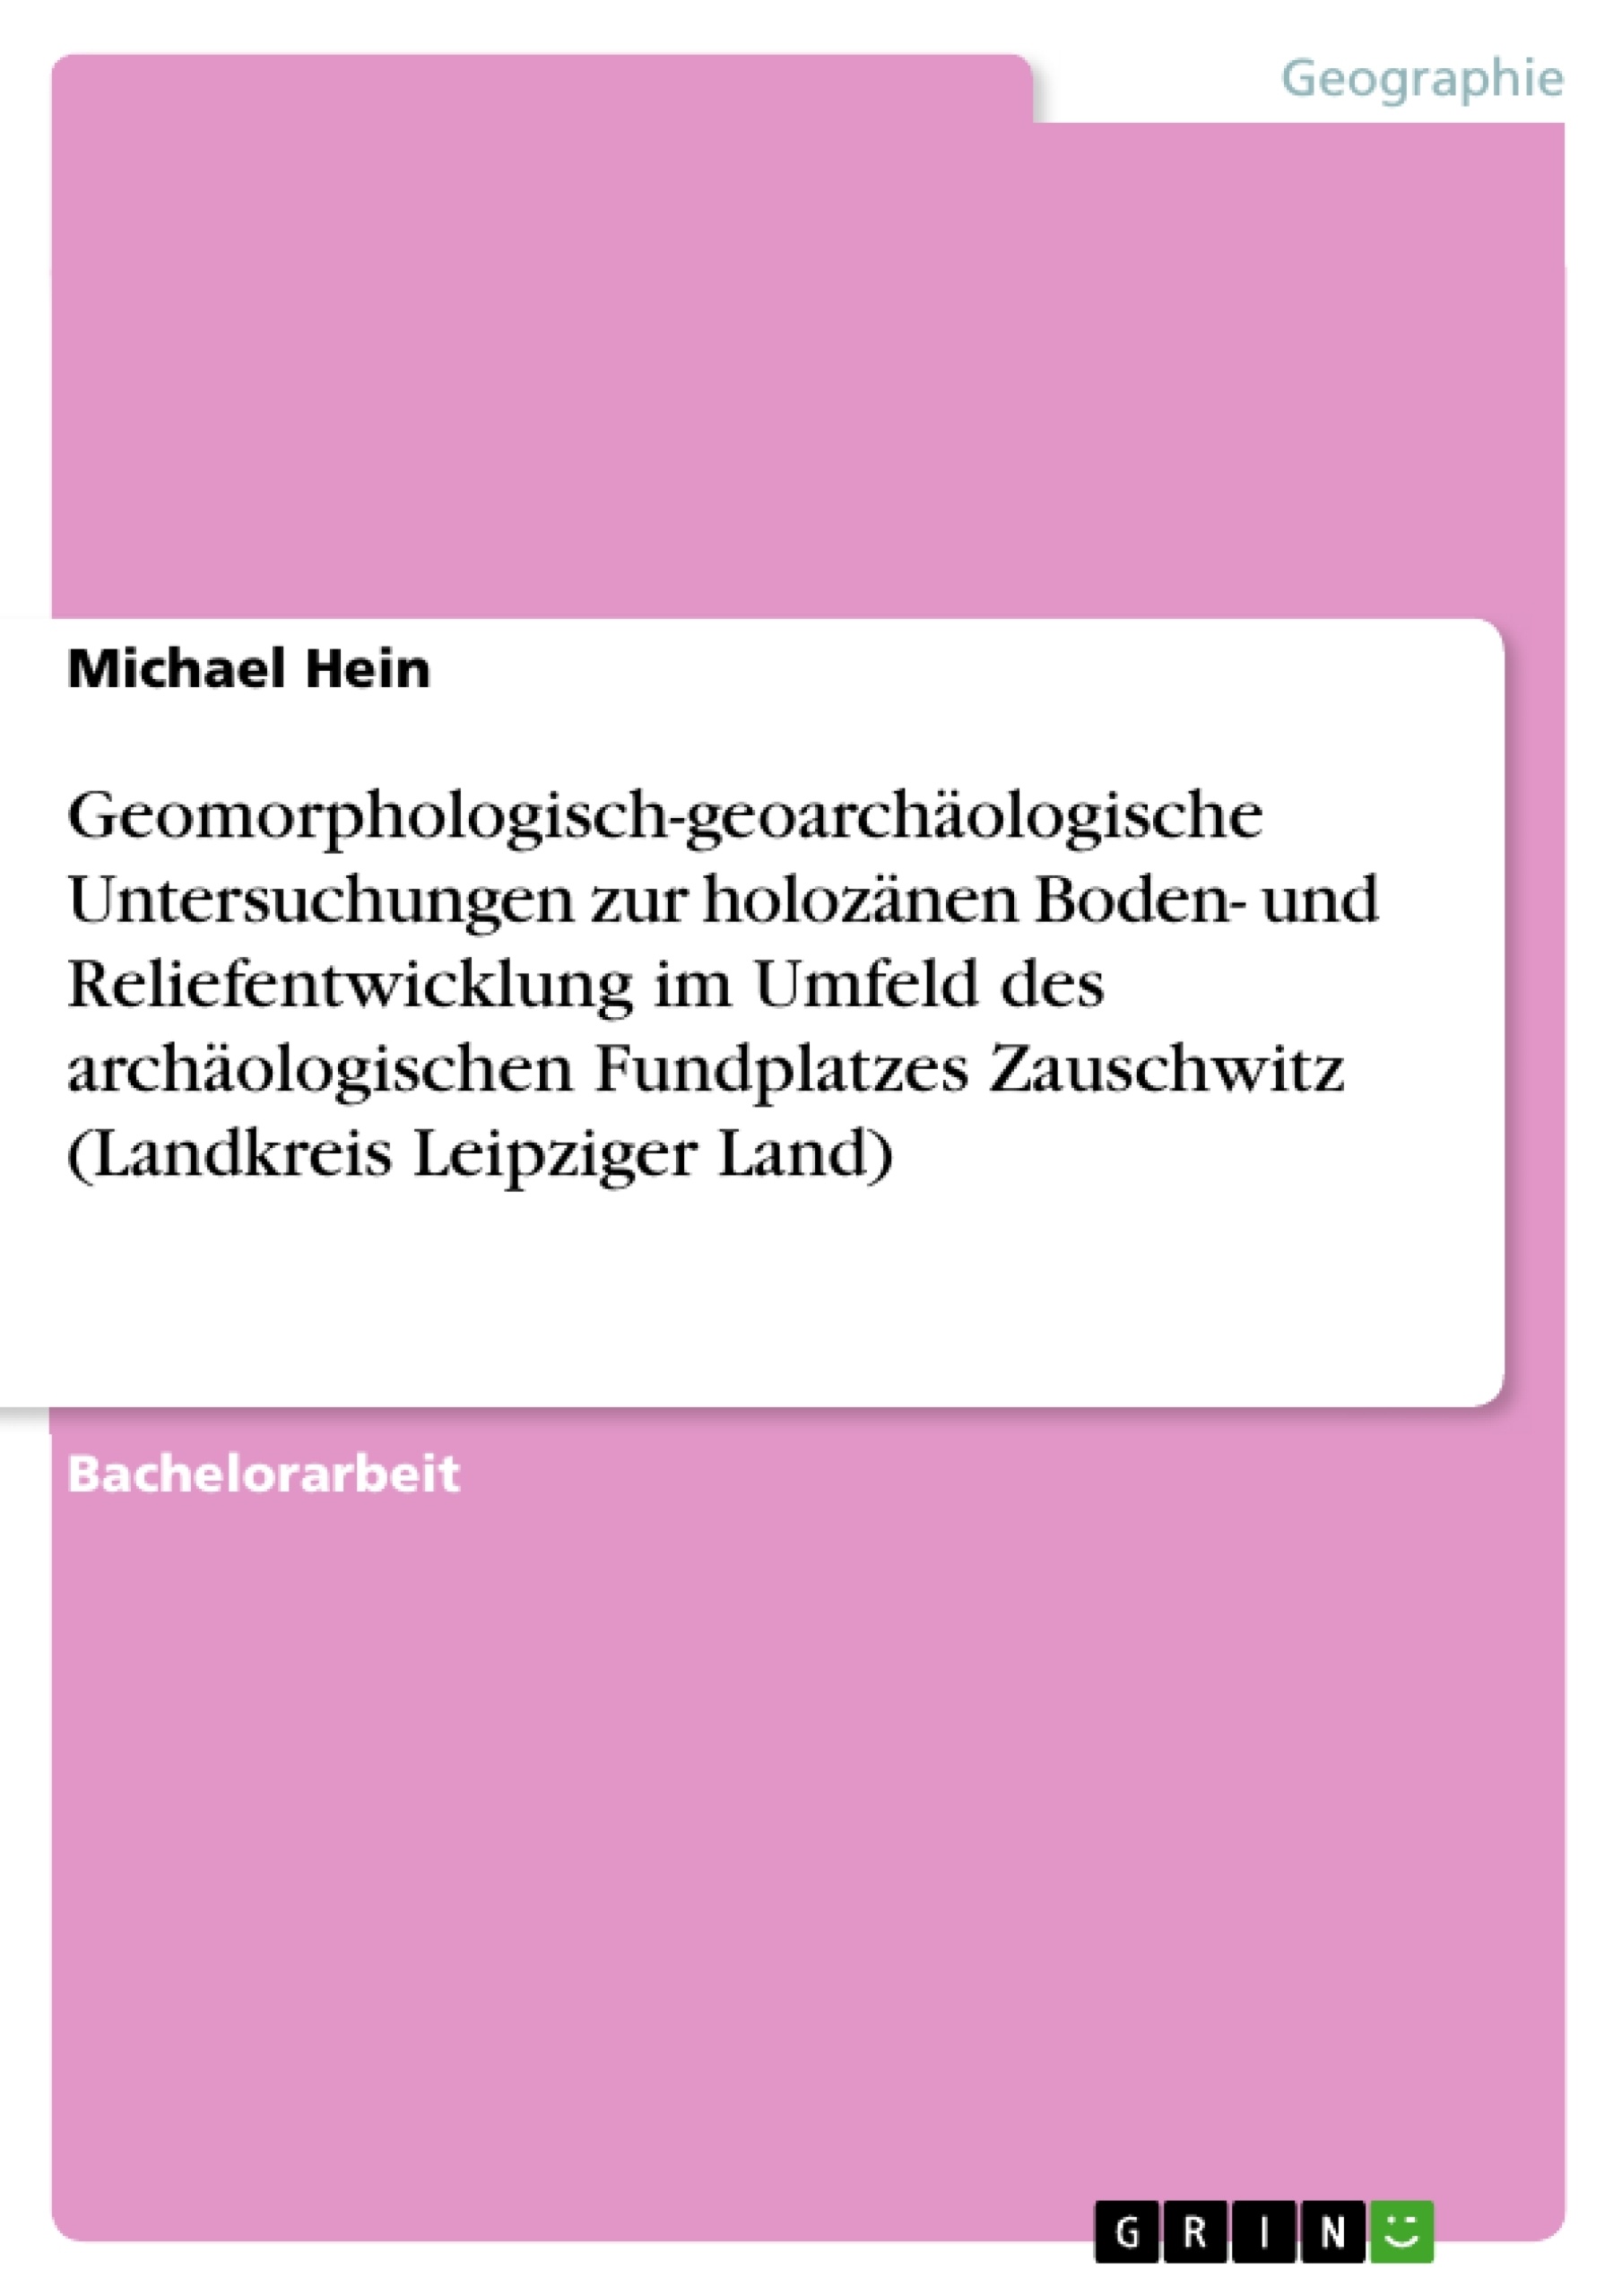 Titel: Geomorphologisch-geoarchäologische Untersuchungen zur holozänen Boden- und Reliefentwicklung im Umfeld des archäologischen Fundplatzes Zauschwitz (Landkreis Leipziger Land)